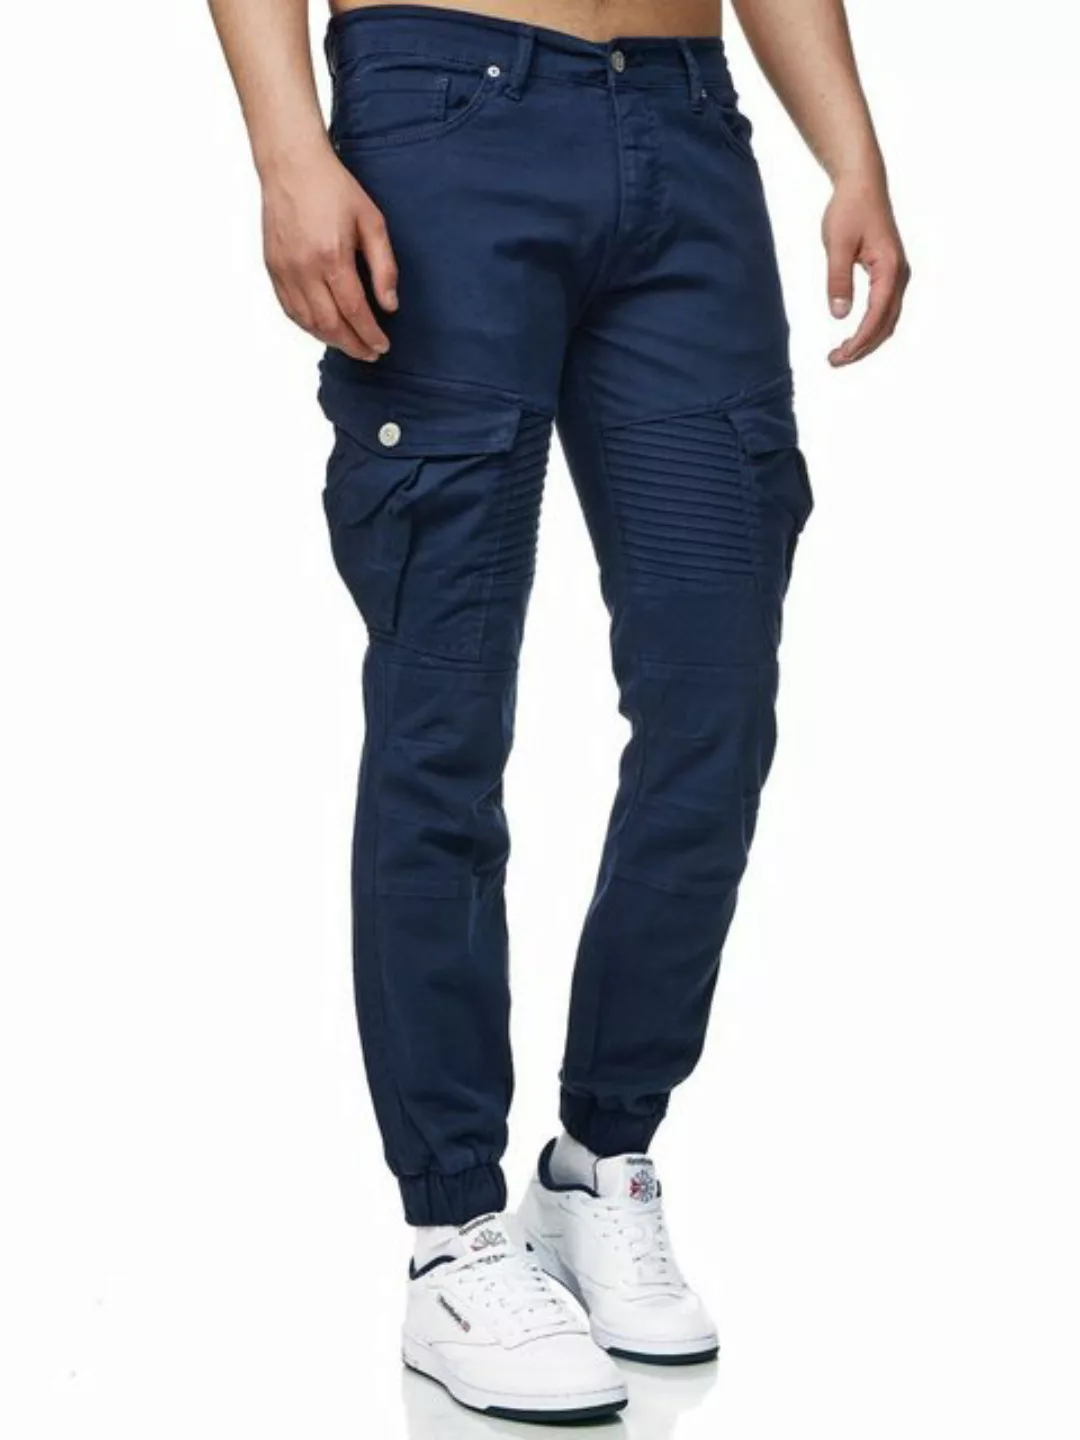 John Kayna Cargojeans Herren Cargo Hose Slim Fit Utility Jeans Männer Chino günstig online kaufen